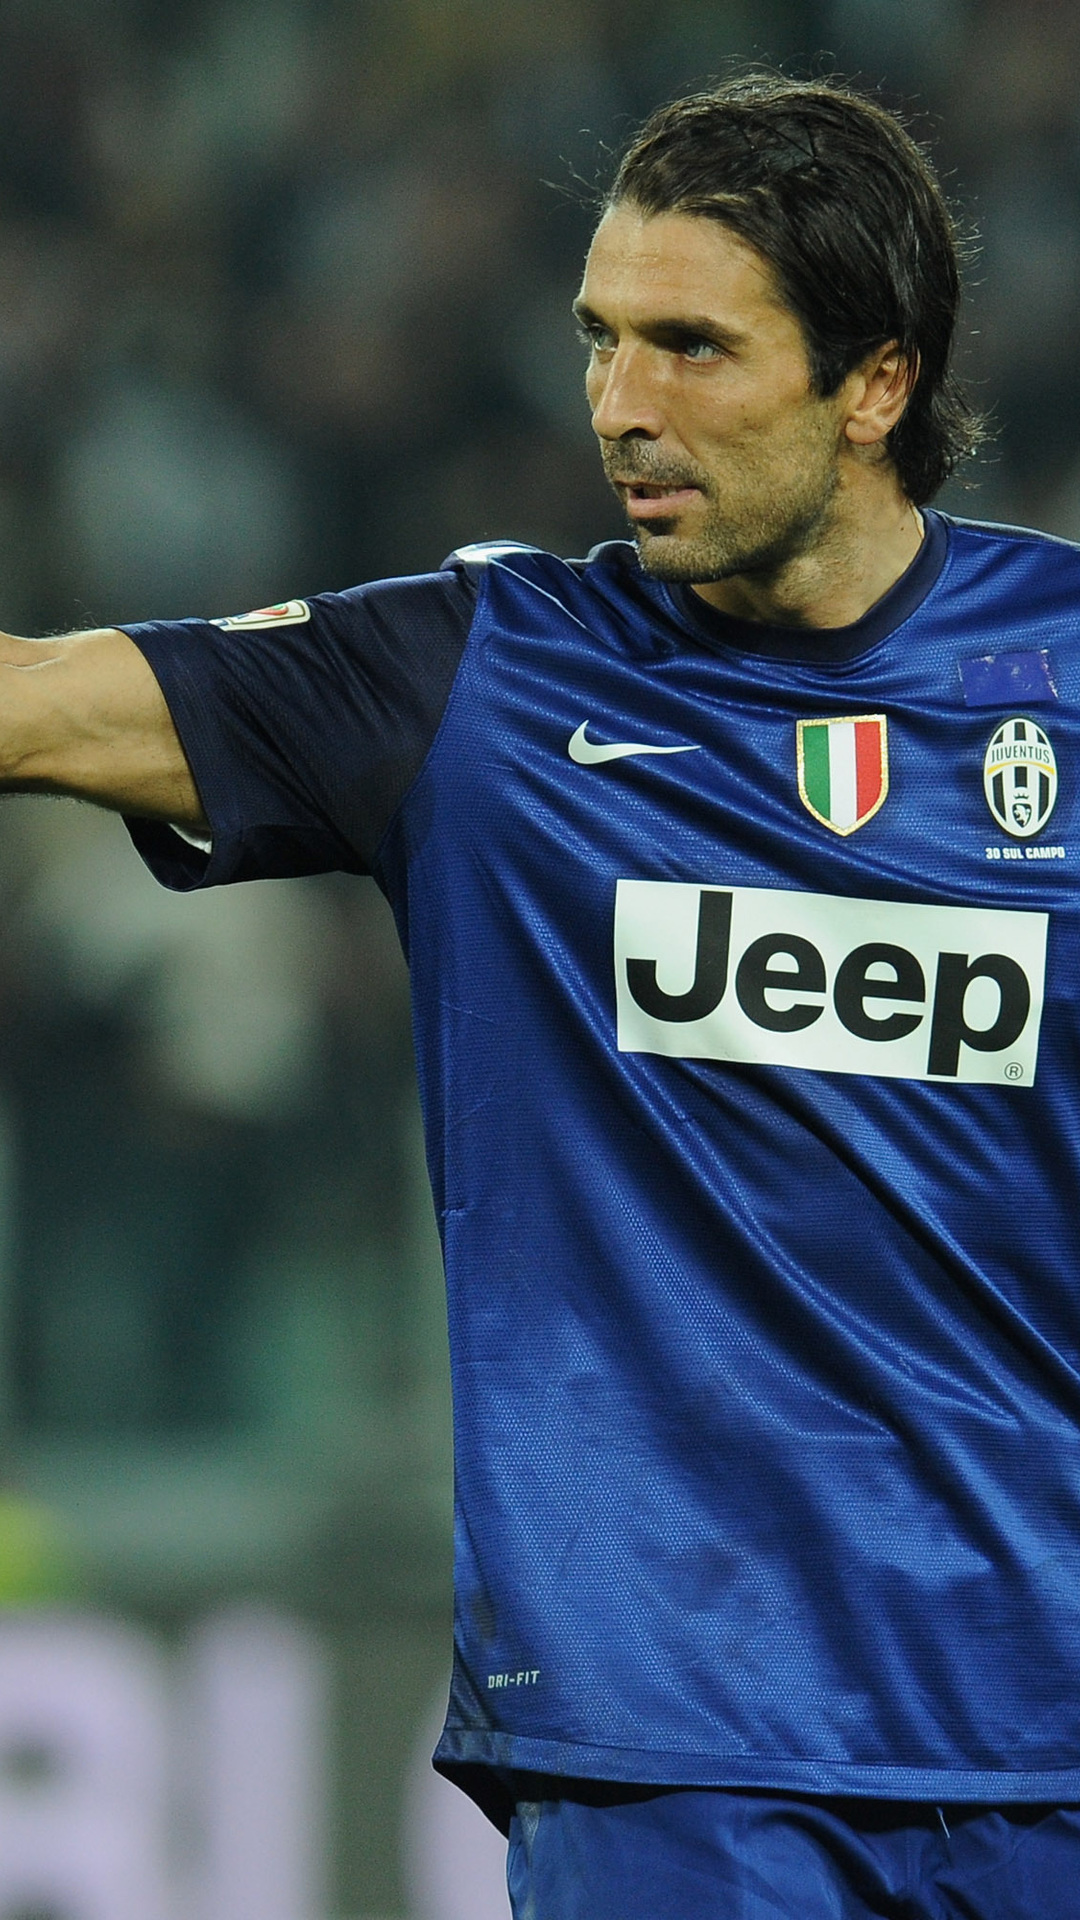 Serie A, Gianluigi Buffon, Goalkeeper, Juventus, Juventus, - Gianluigi Buffon - HD Wallpaper 